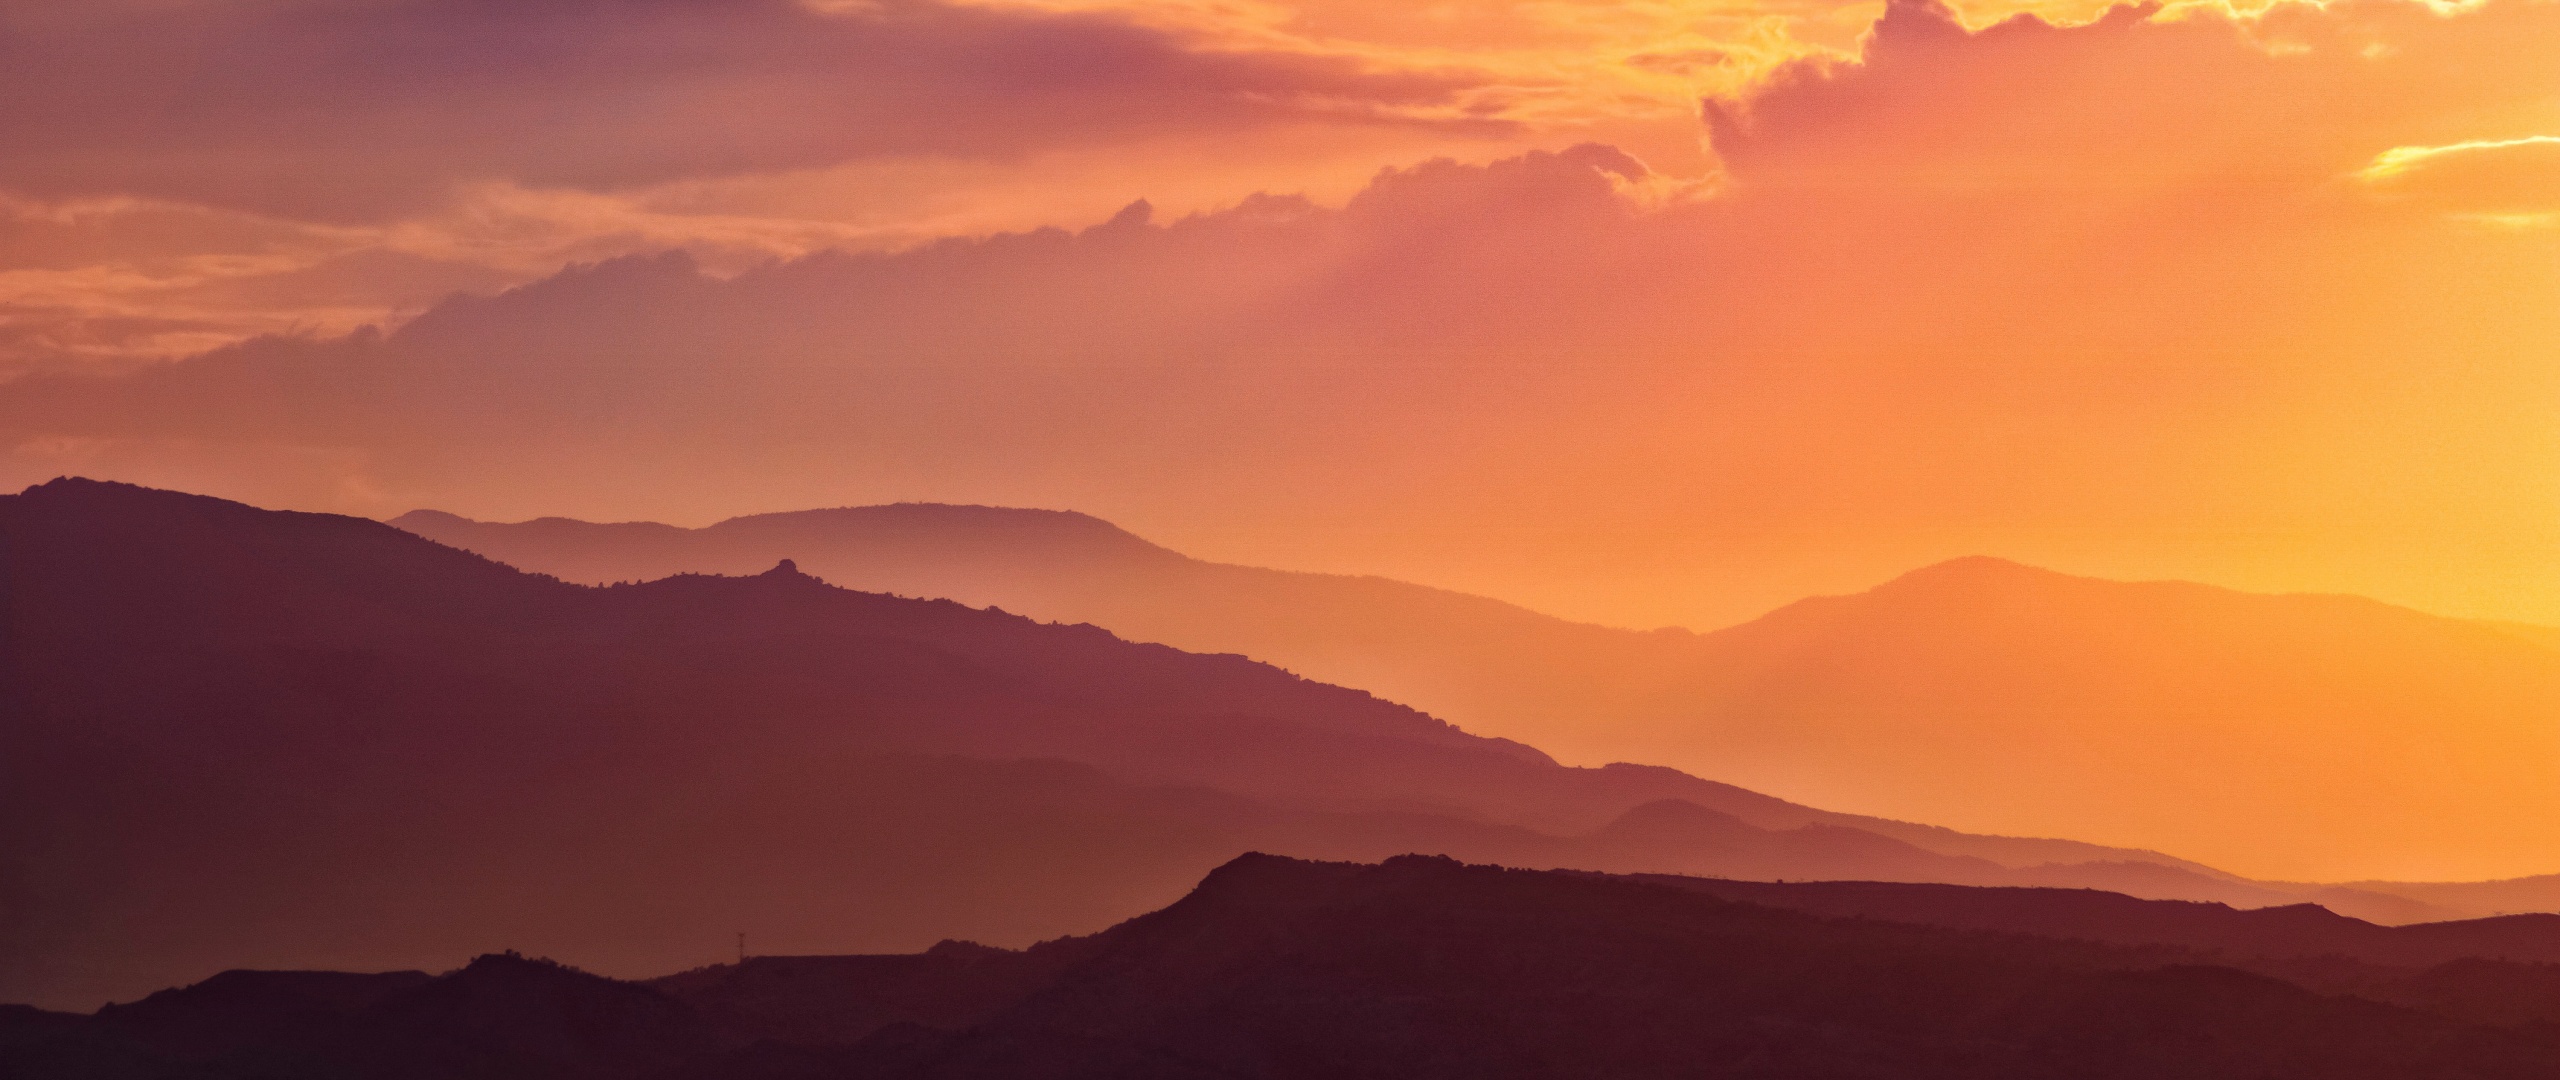 Bức tranh hoàng hôn đẹp nhất mà bạn từng thấy! Với đồi núi và thiên nhiên vô cùng tuyệt đẹp, bức hình Sunset Wallpaper sẽ khiến bạn đắm mình trong một không gian đầy thơ mộng. Hãy xem ngay ảnh #4928 này để tận hưởng cảnh tượng thiên nhiên đẹp nhất.